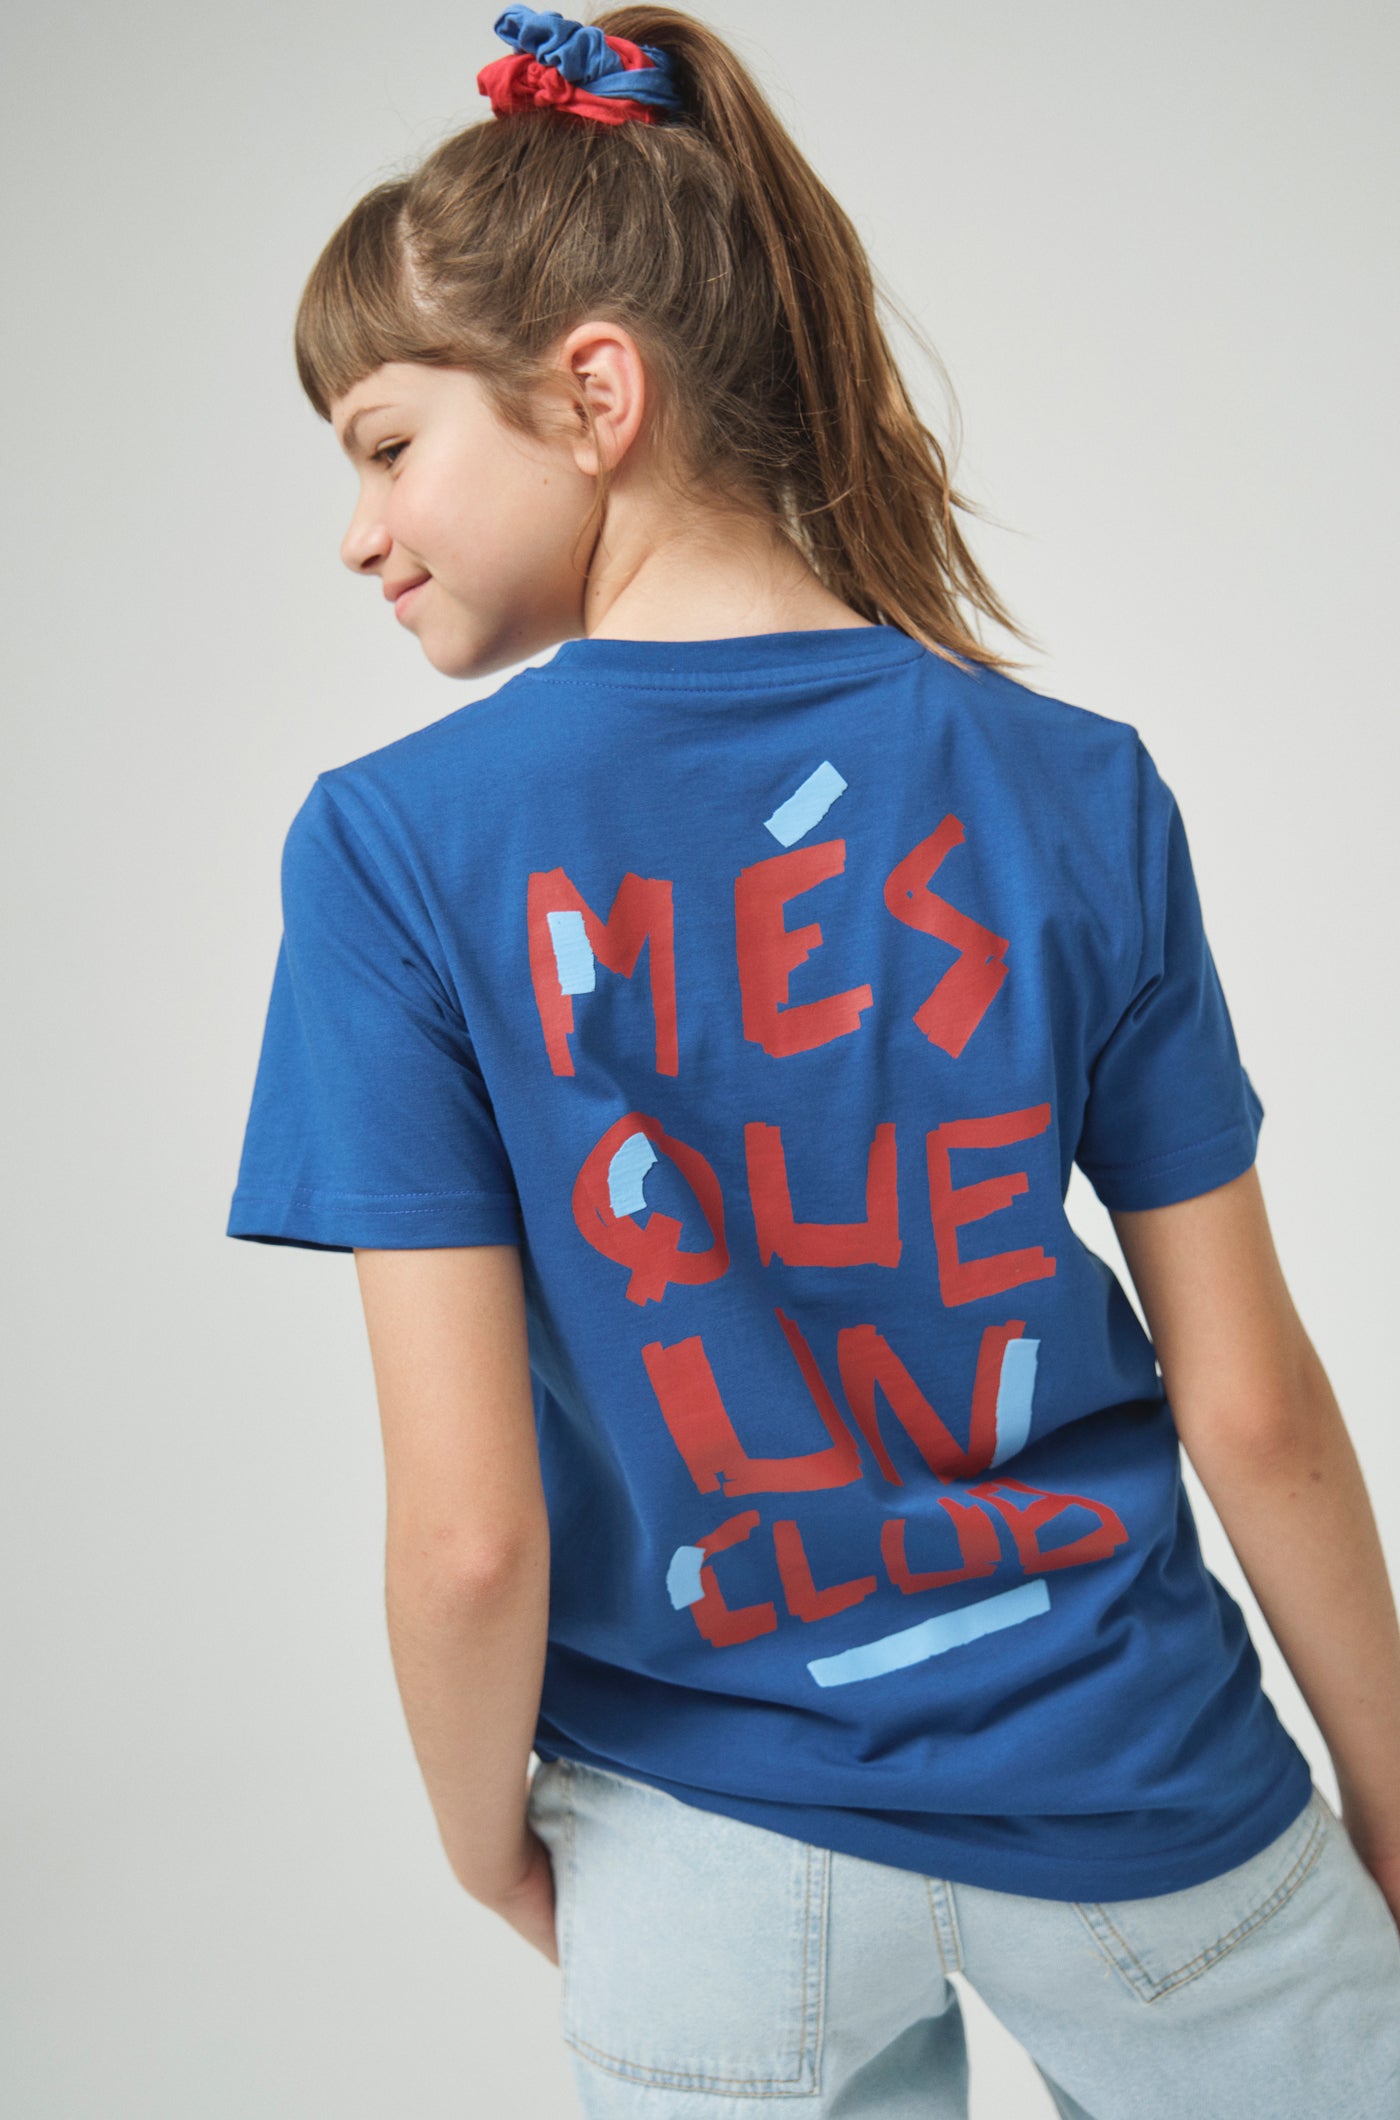 Camiseta azul "Més que un Club" - Junior